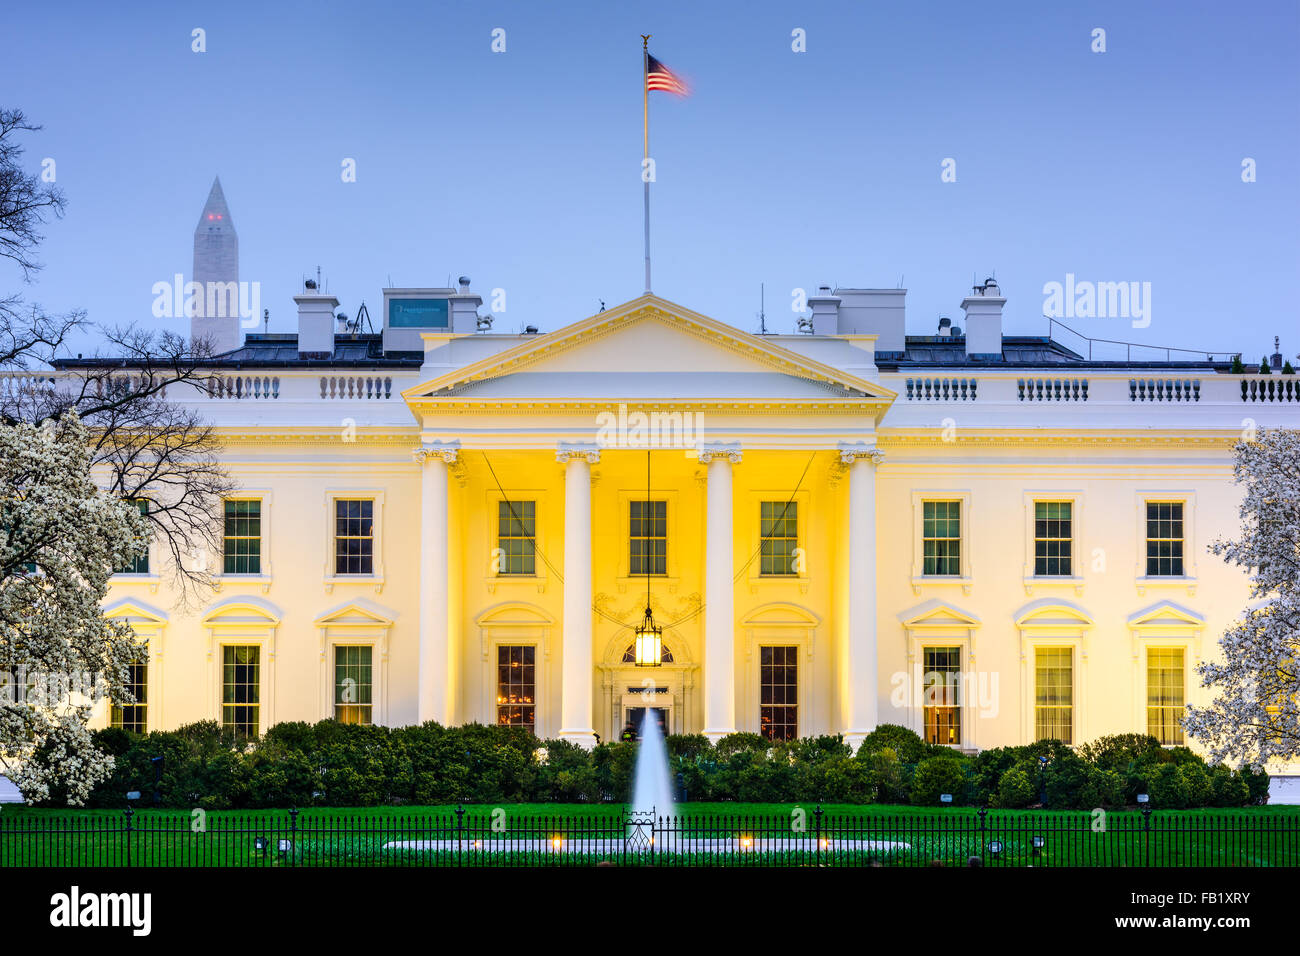 Washington, DC at the White House Stock Photo